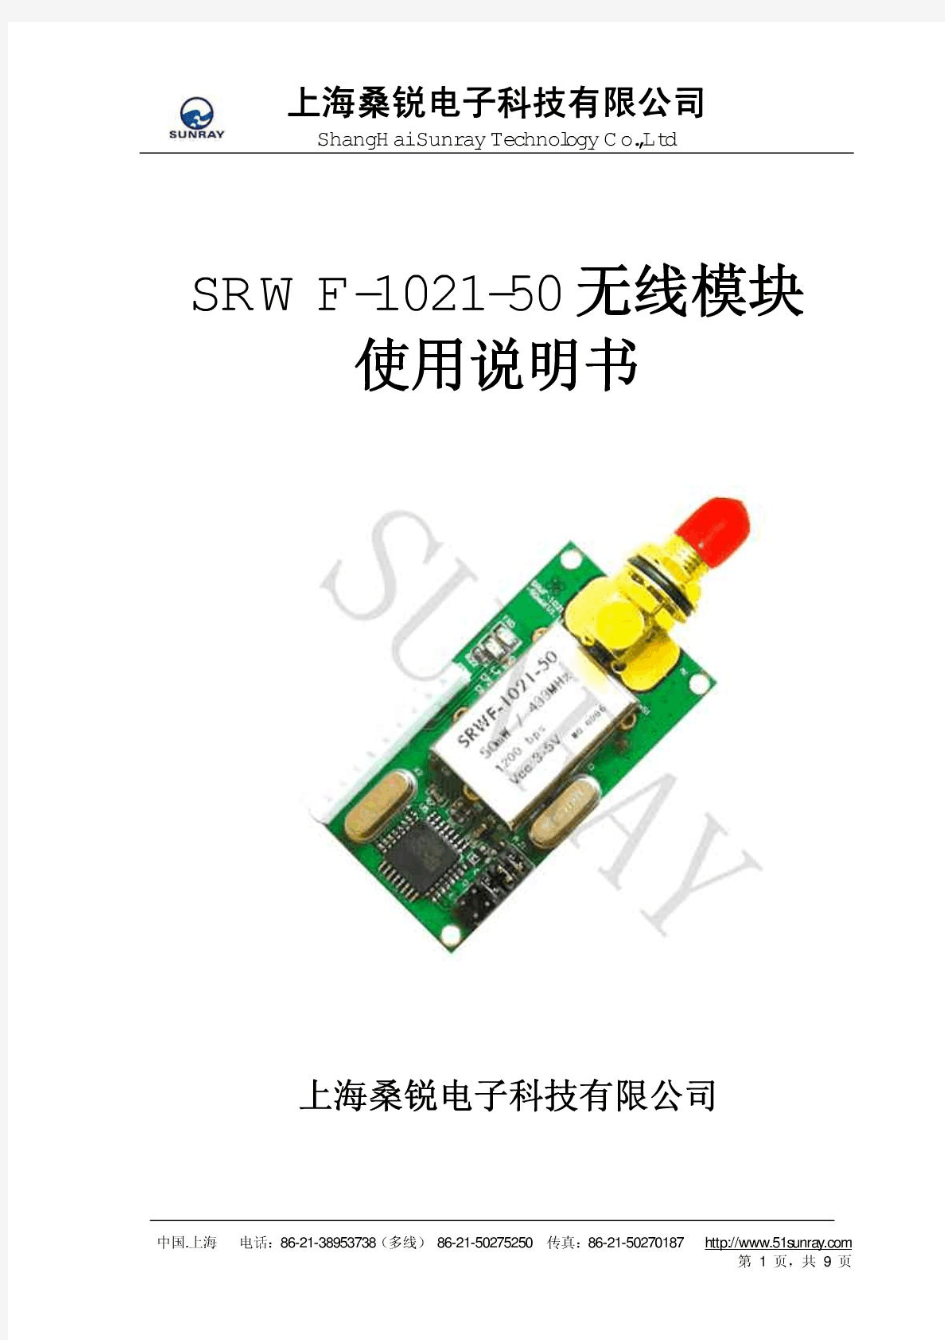 SRWF-1021-50 无线模块使用说明书